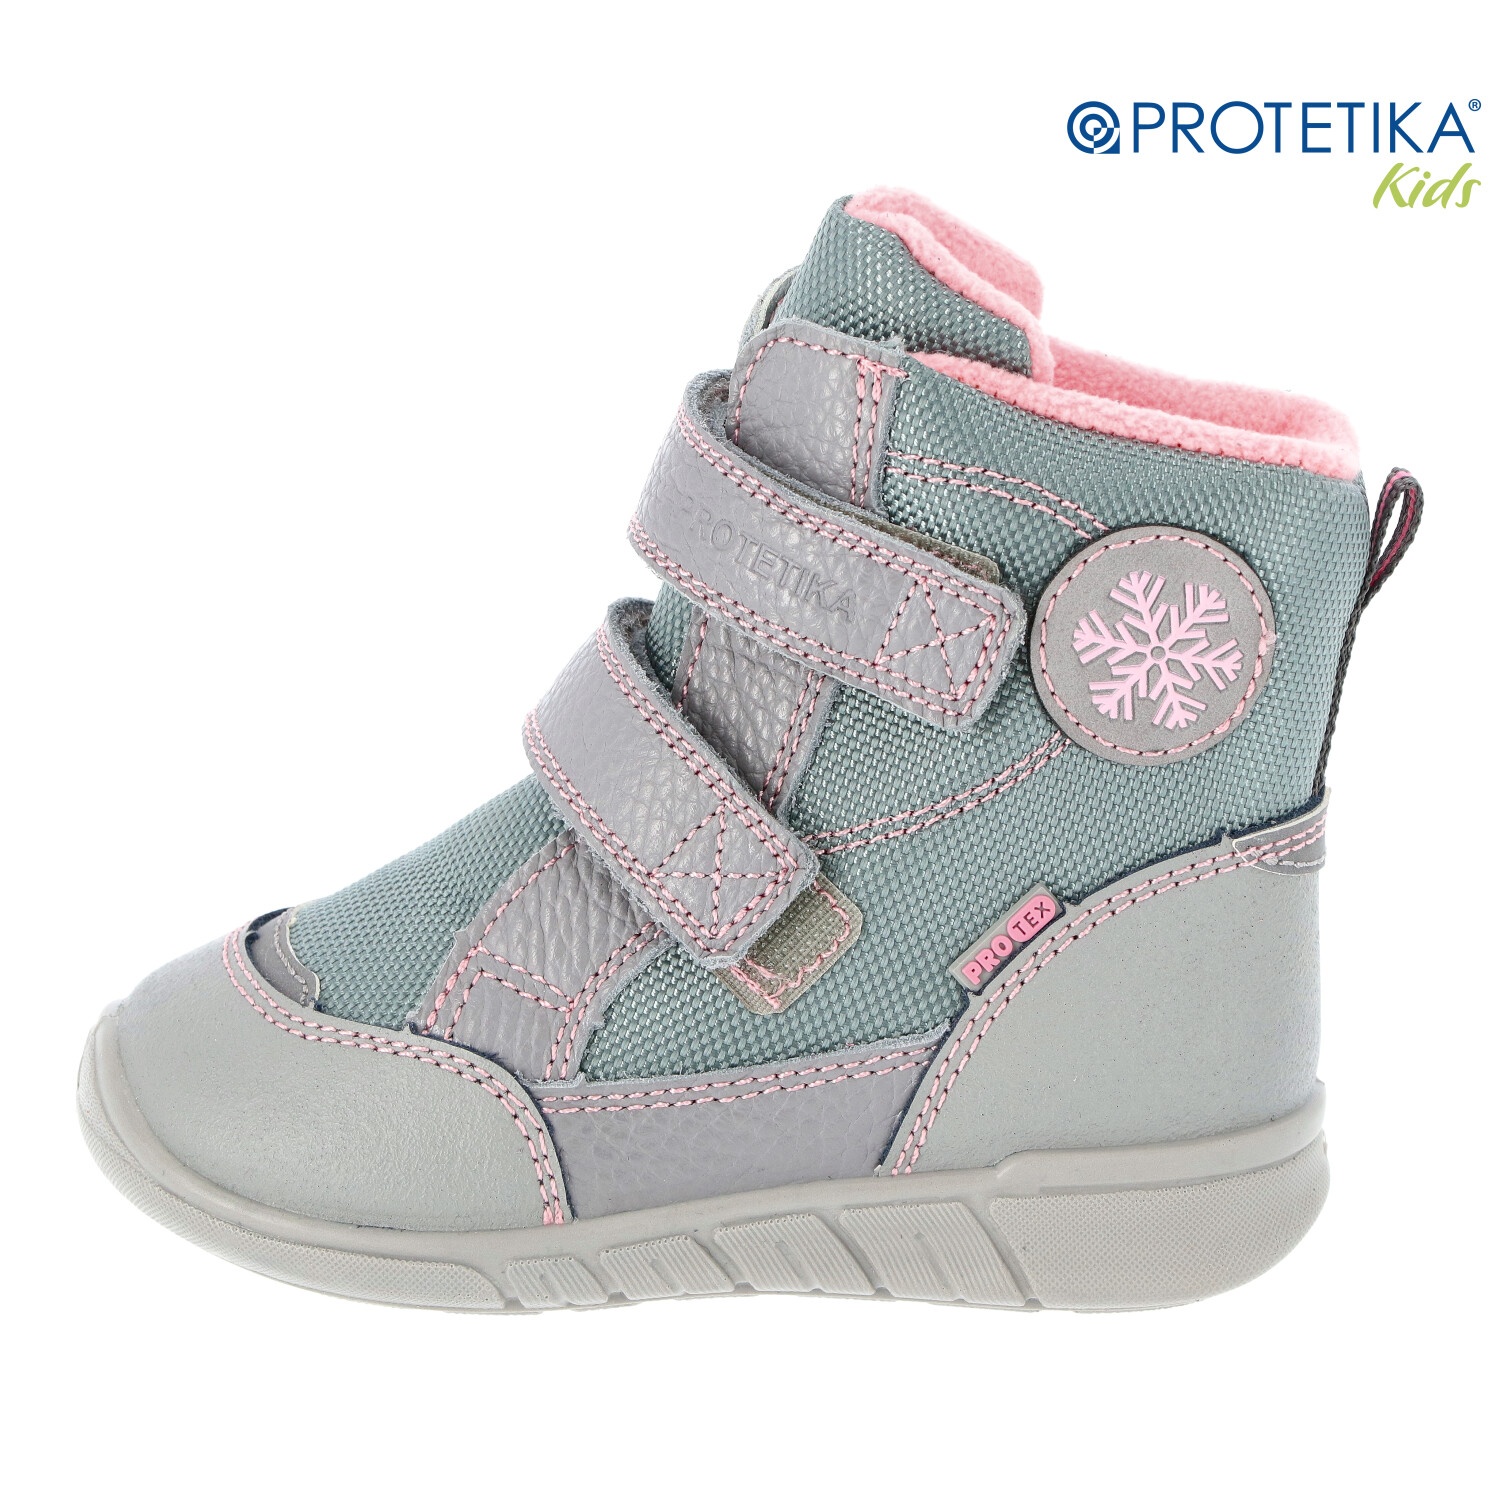 Protetika - zimné topánky s membránou PRO-tex LAURA grey - zateplené